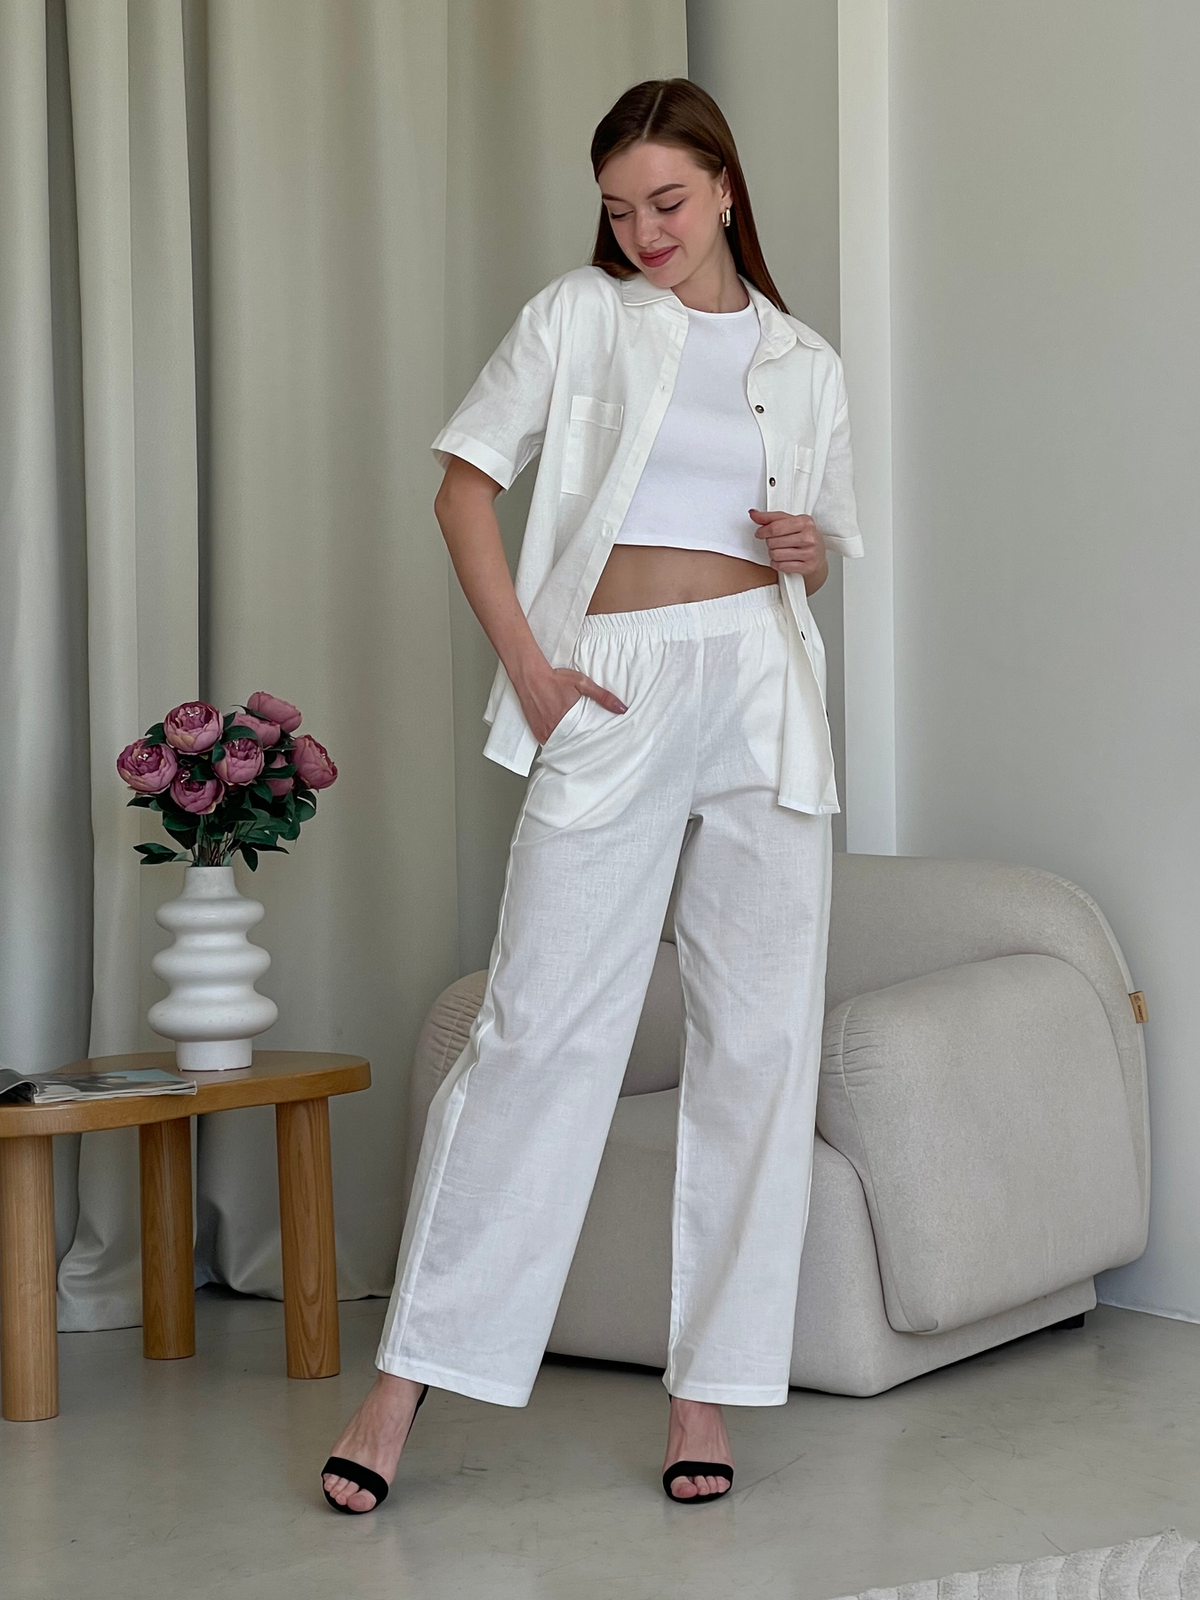 Купить Льняная рубашка с коротким рукавом белая Merlini Нино 200001202 размер 42-44 (S-M) в интернет-магазине